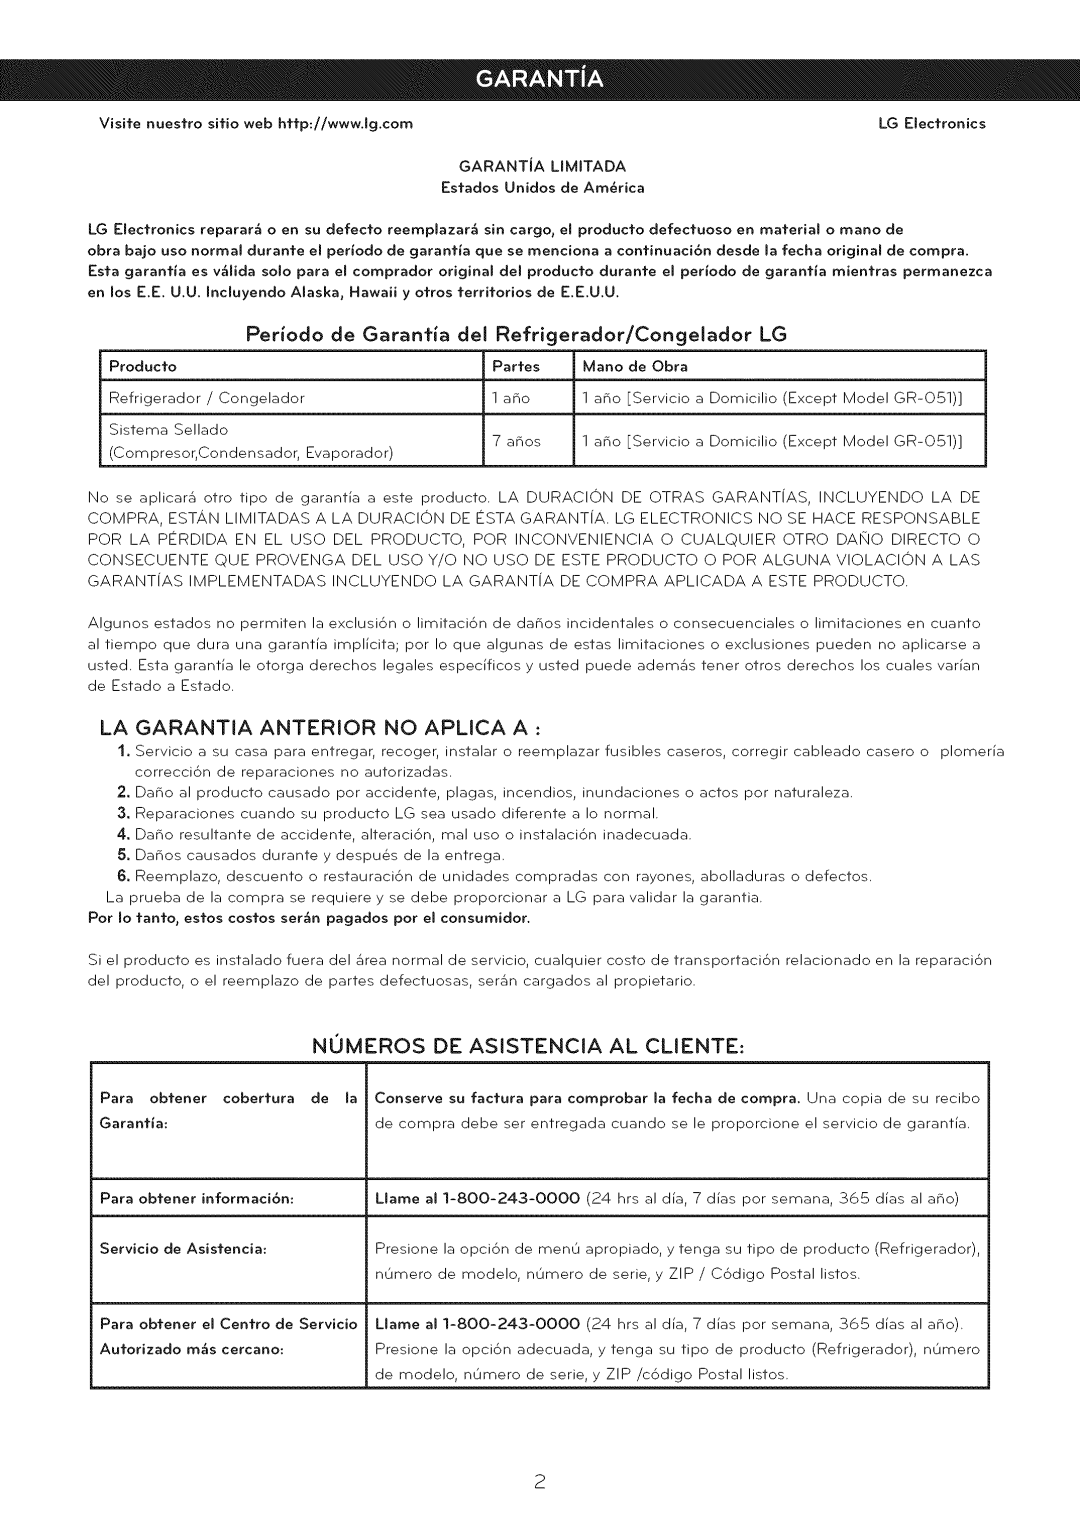 LG Electronics LFC25765 manual La Garantia Anterior No Aplica A, Nomeros De Asistencia Al Cliente 